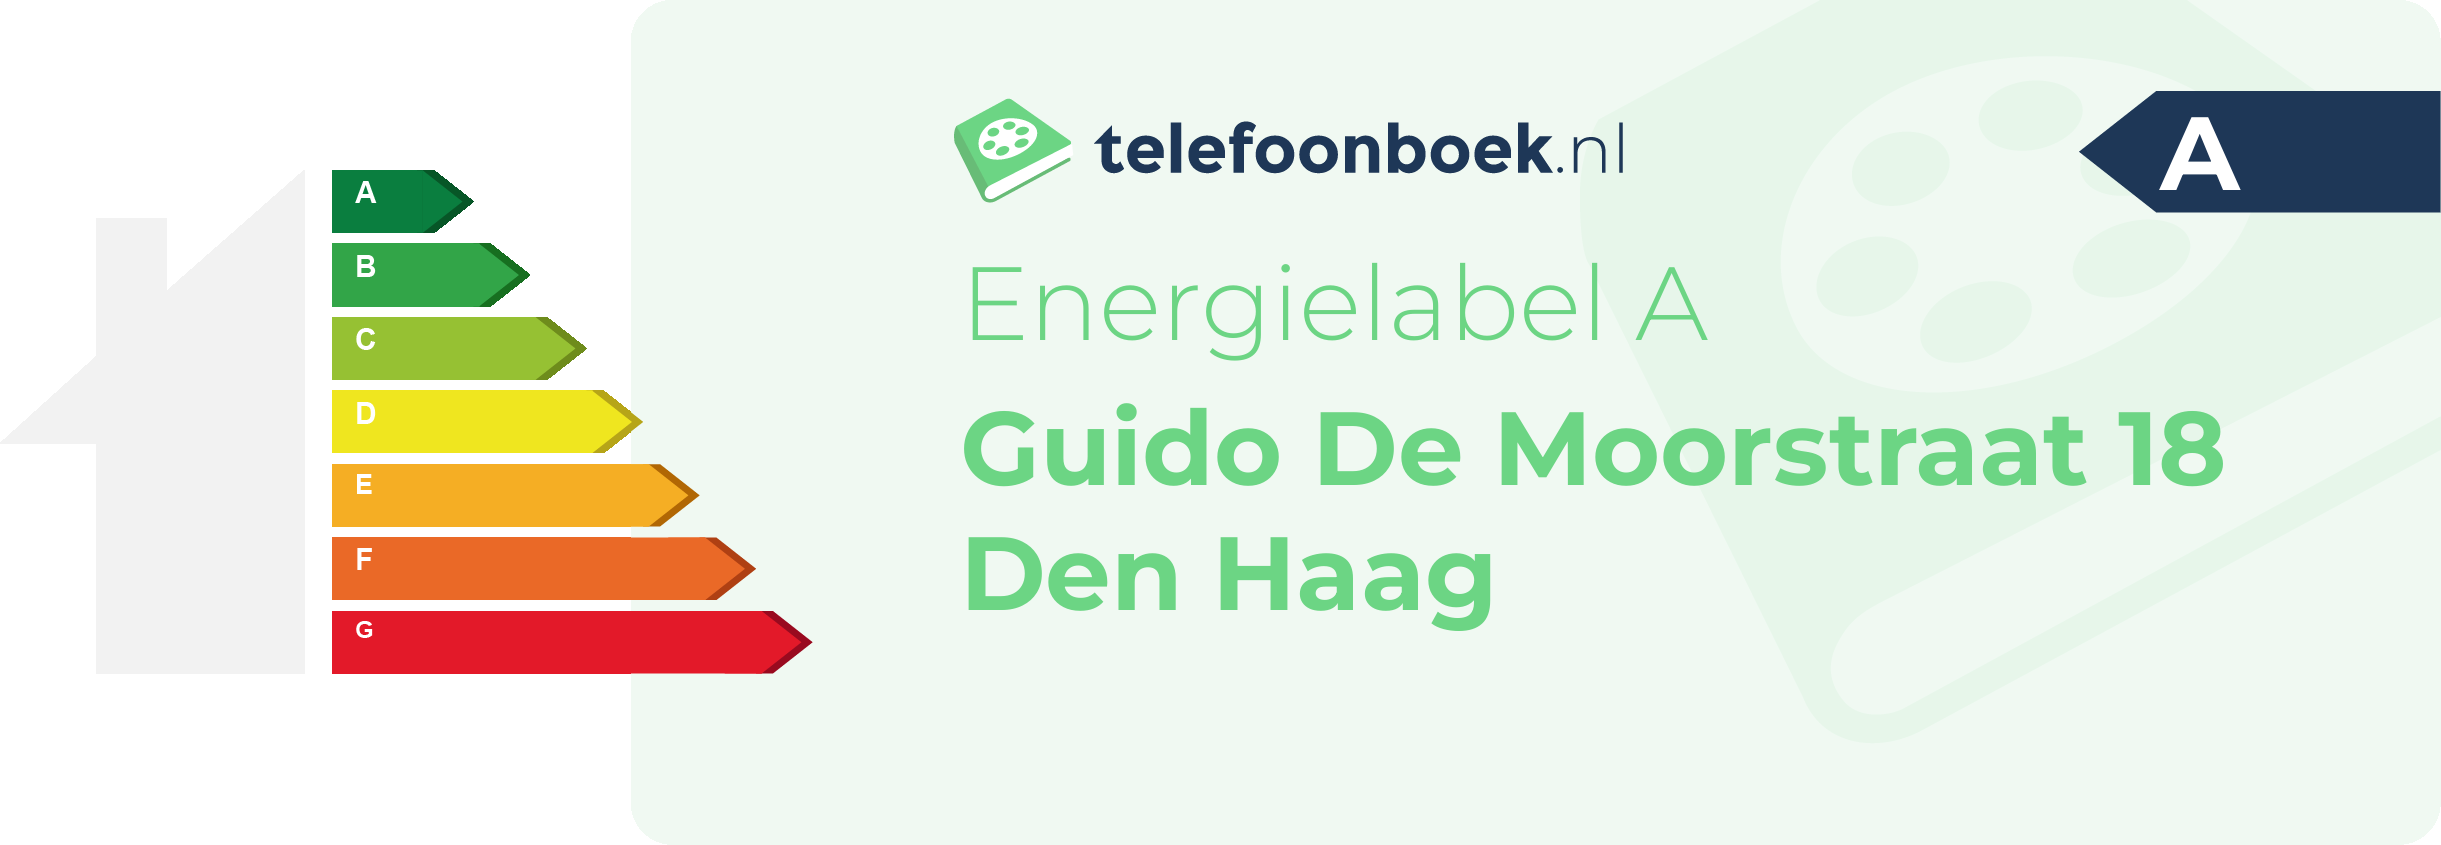 Energielabel Guido De Moorstraat 18 Den Haag